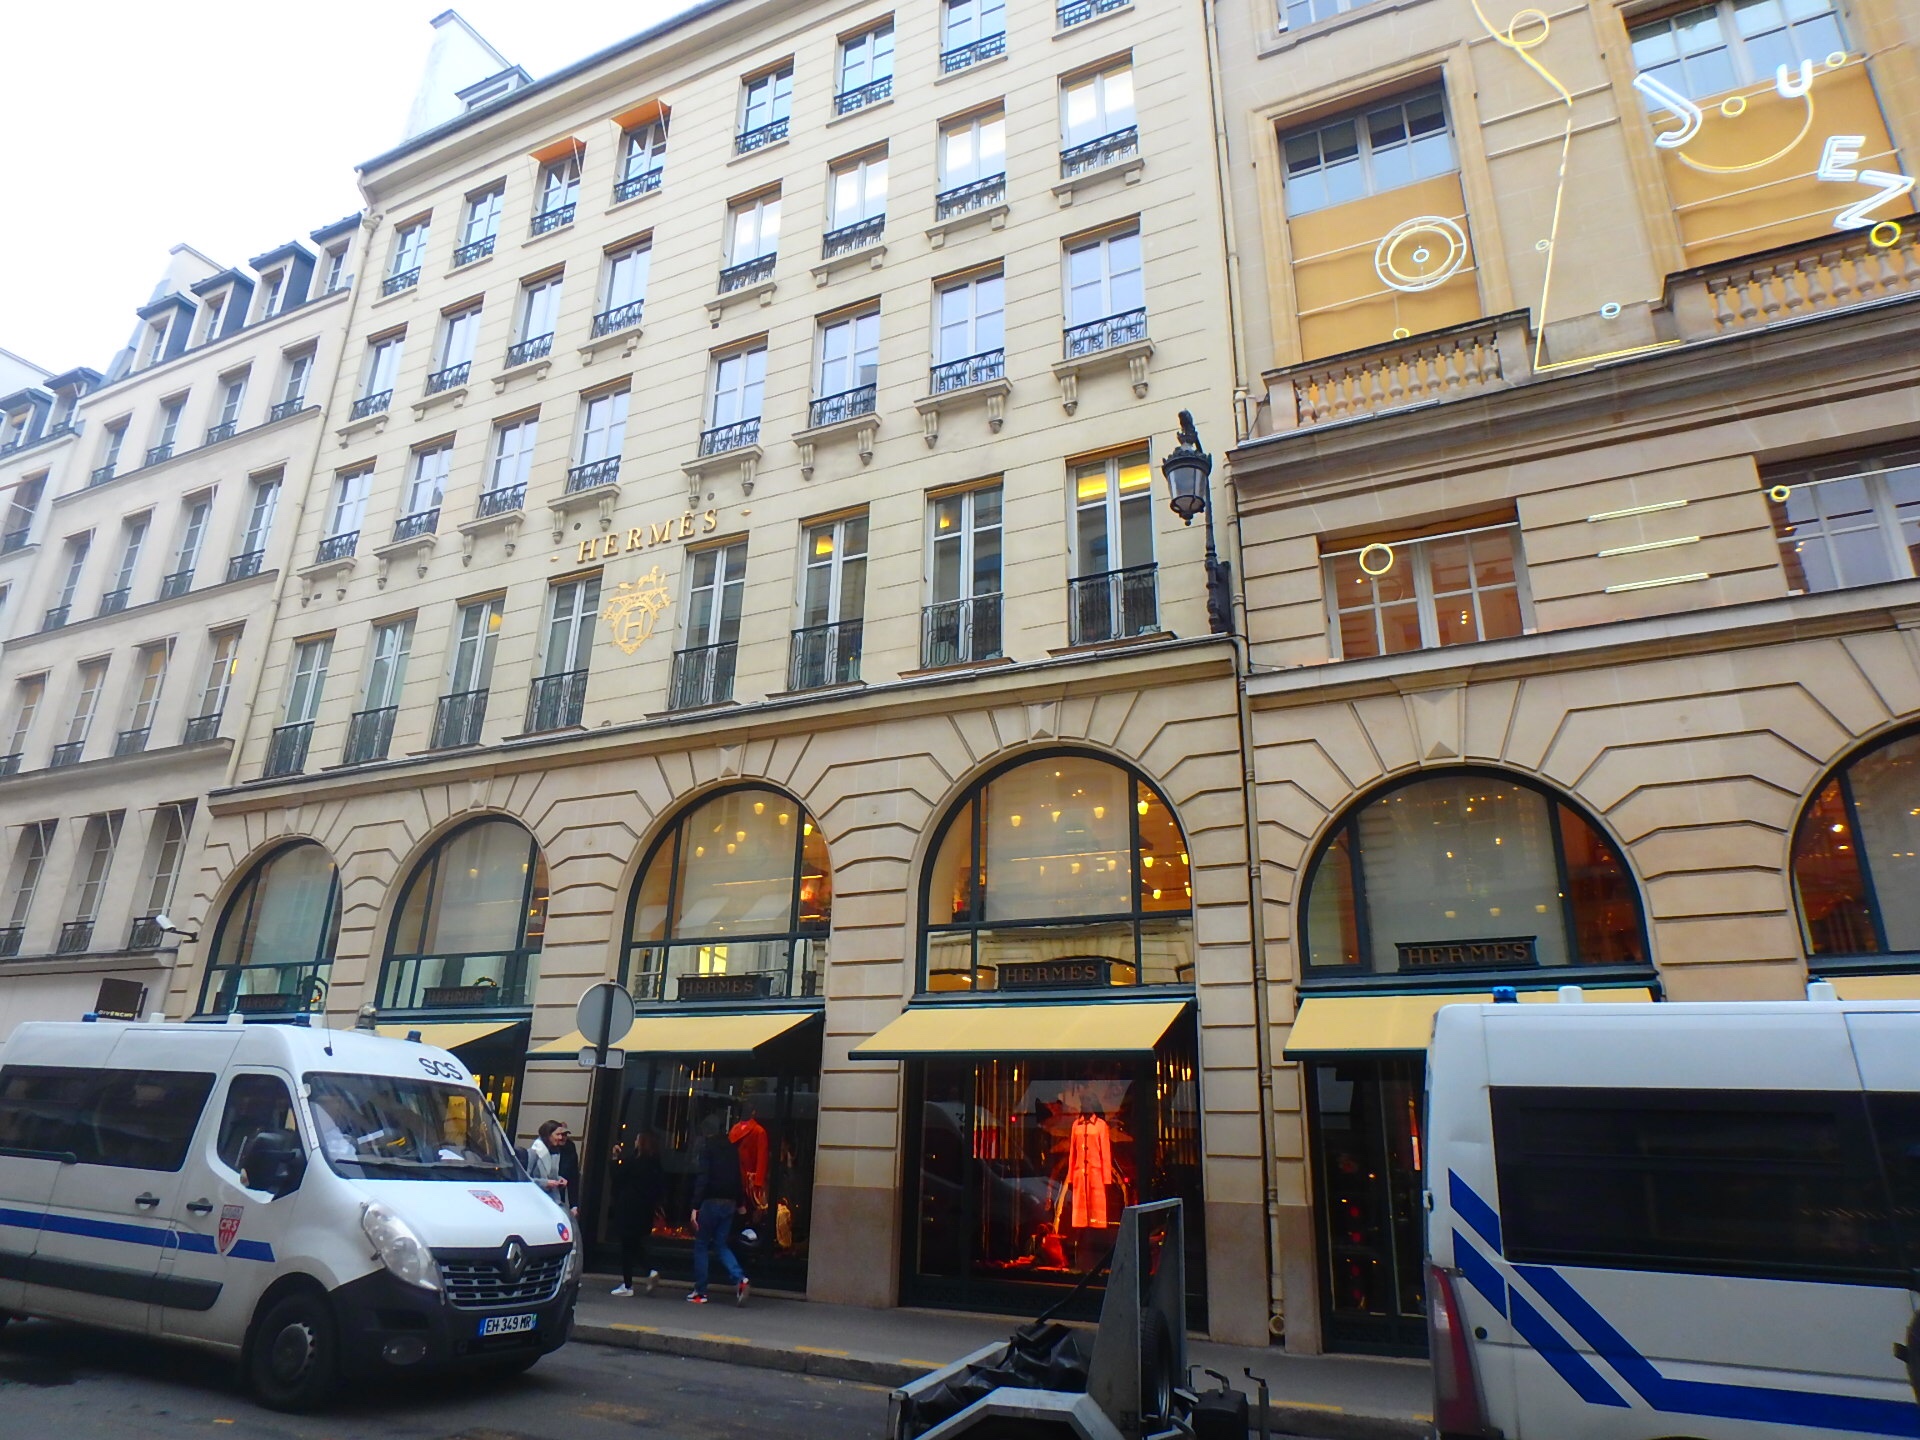 【カンボン通り】パリのCHANEL本店でお買い物。フランス旅行ブログ | 絶景in - 国内 / 海外旅行記